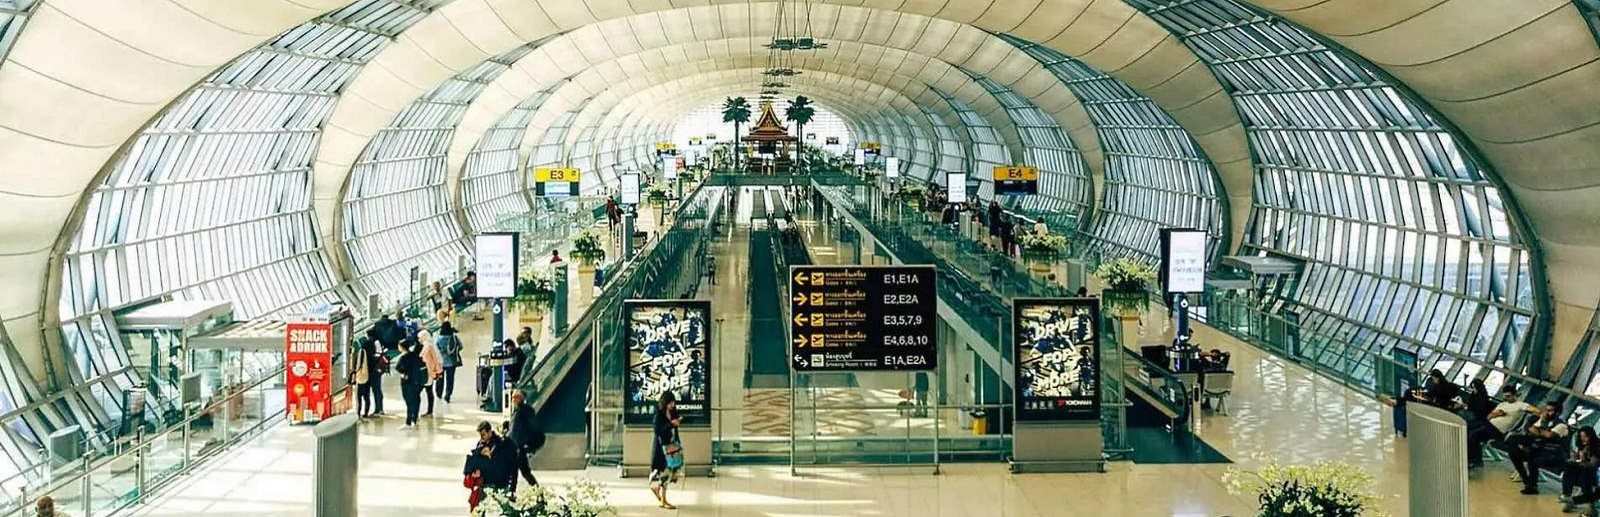 Suvarnabhumi airport Bangkok.jpg